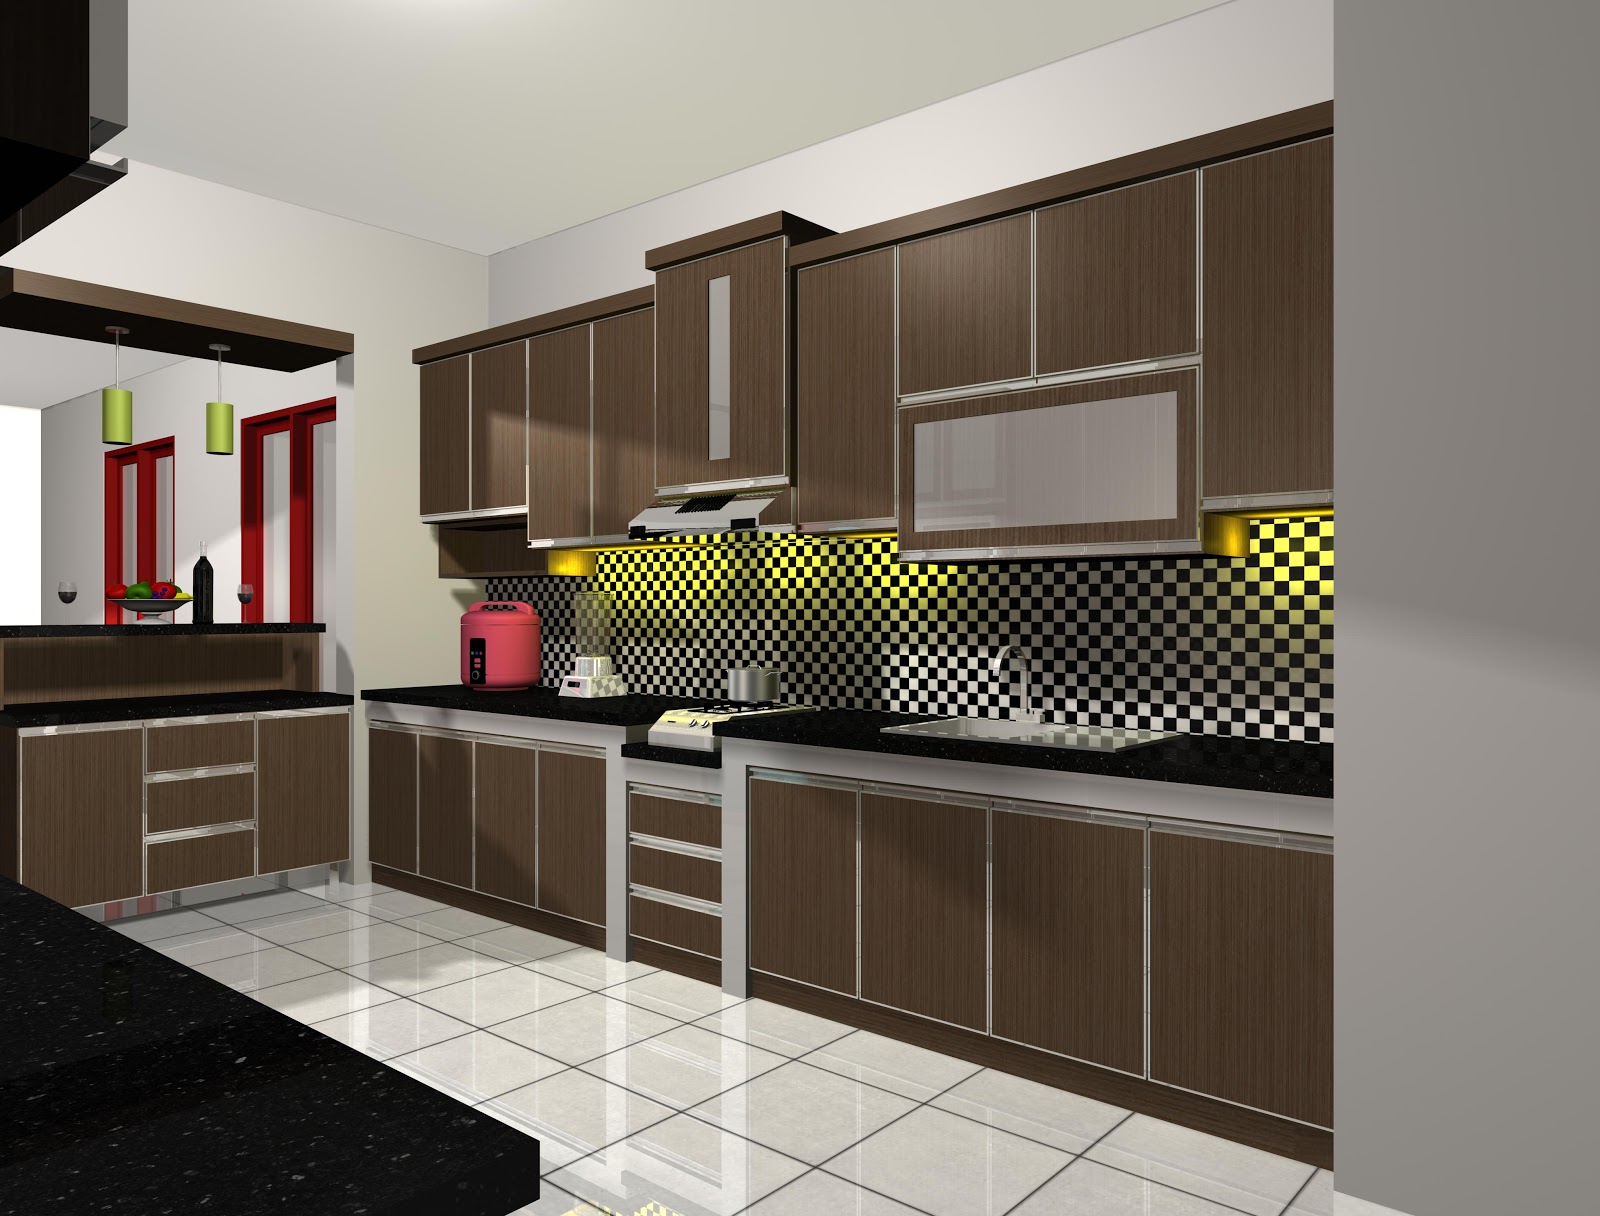 Desain Interior Dapur Rumah Modern | Terbaru 2016